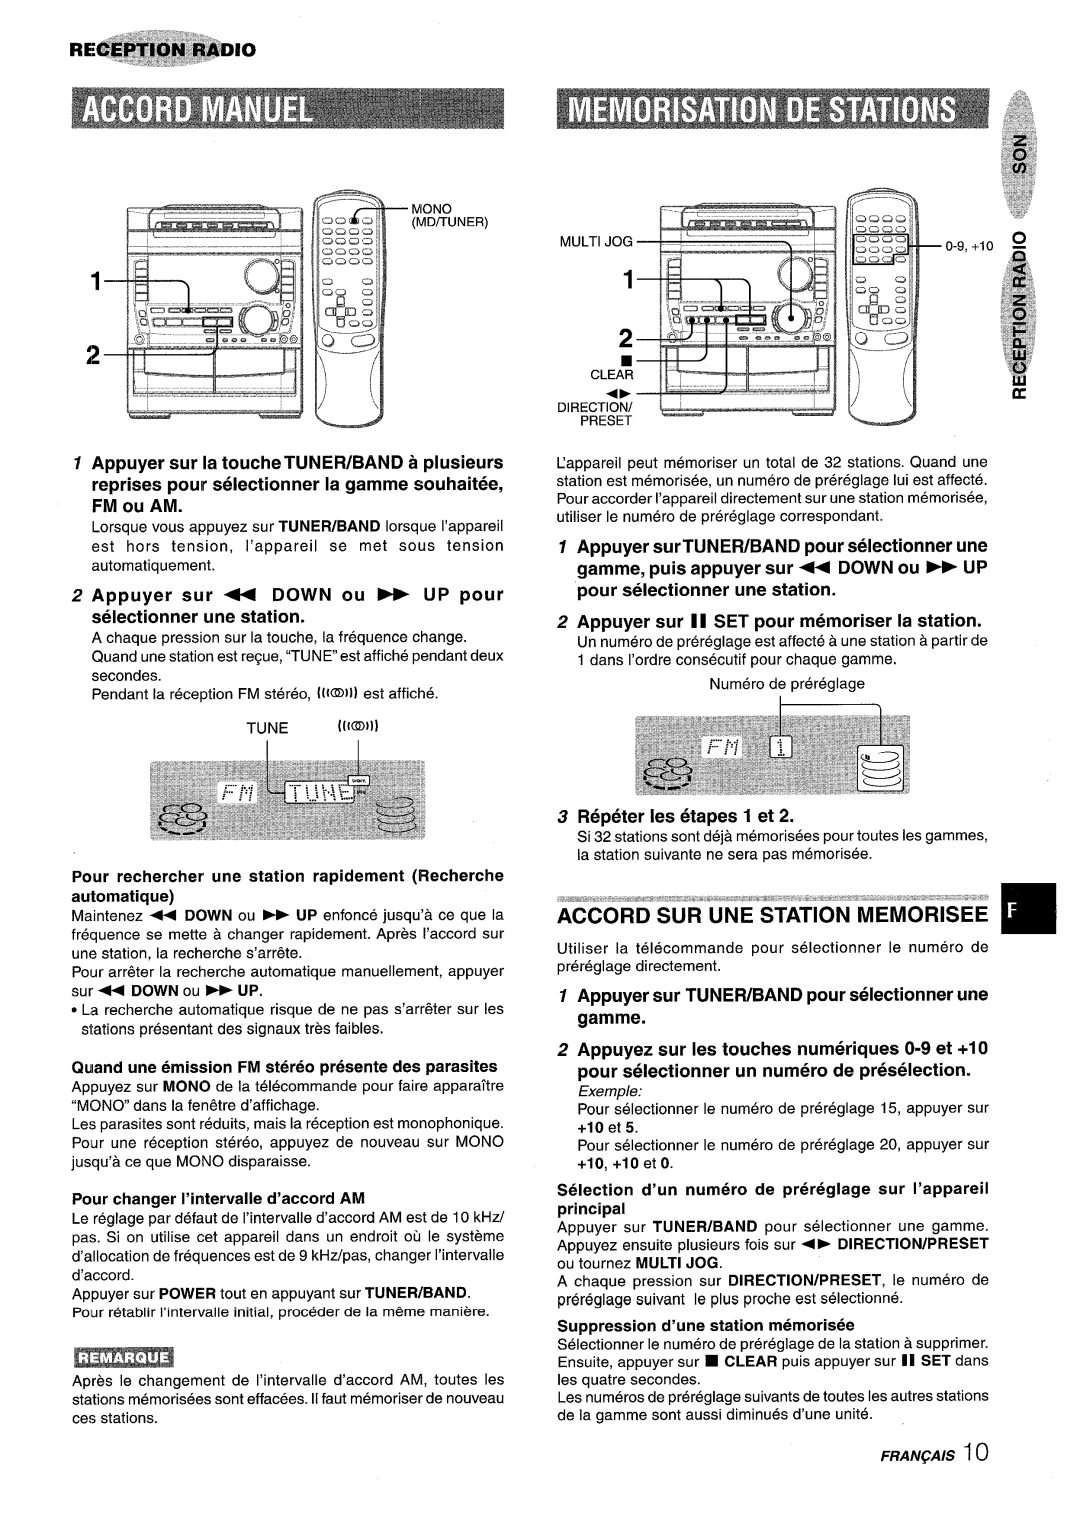 Sony NSX-A959 Fm Ou Am, selectionner une station, Appuyer surTUNER/BAND pour selectionner une, Repeter Ies etapes 1 et 